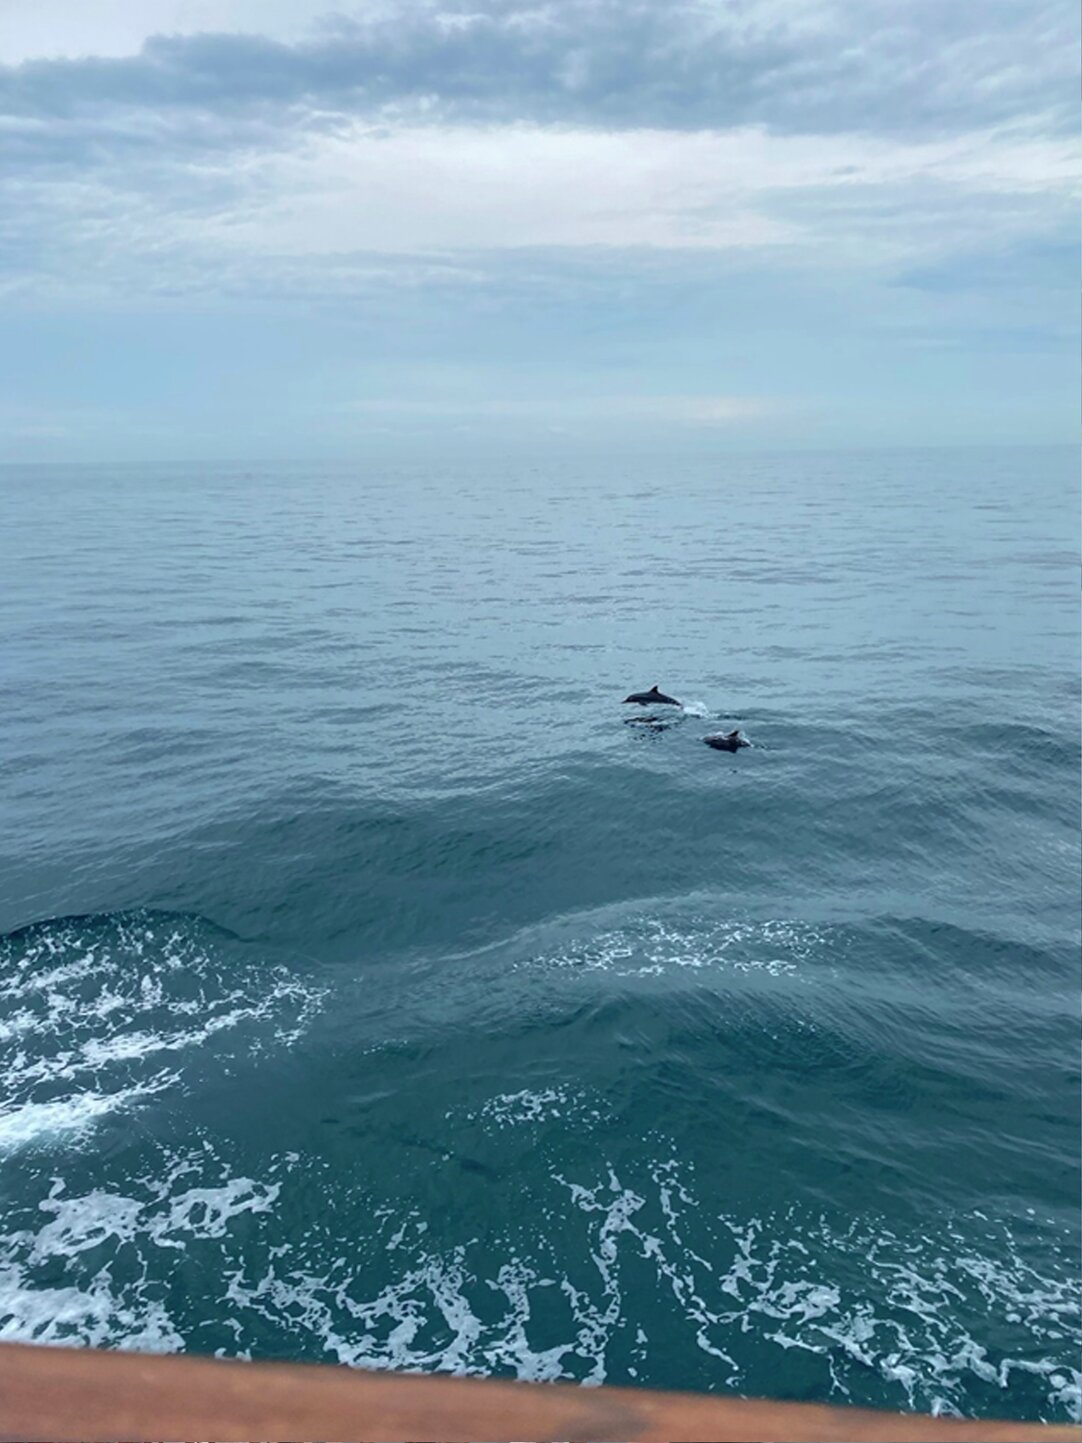 Til tross for lite forskning i løpet av etappen vi var med på, var vi heldige og fikk se delfiner leke seg i bølgene fra skipet flere av dagene vi var til havs.